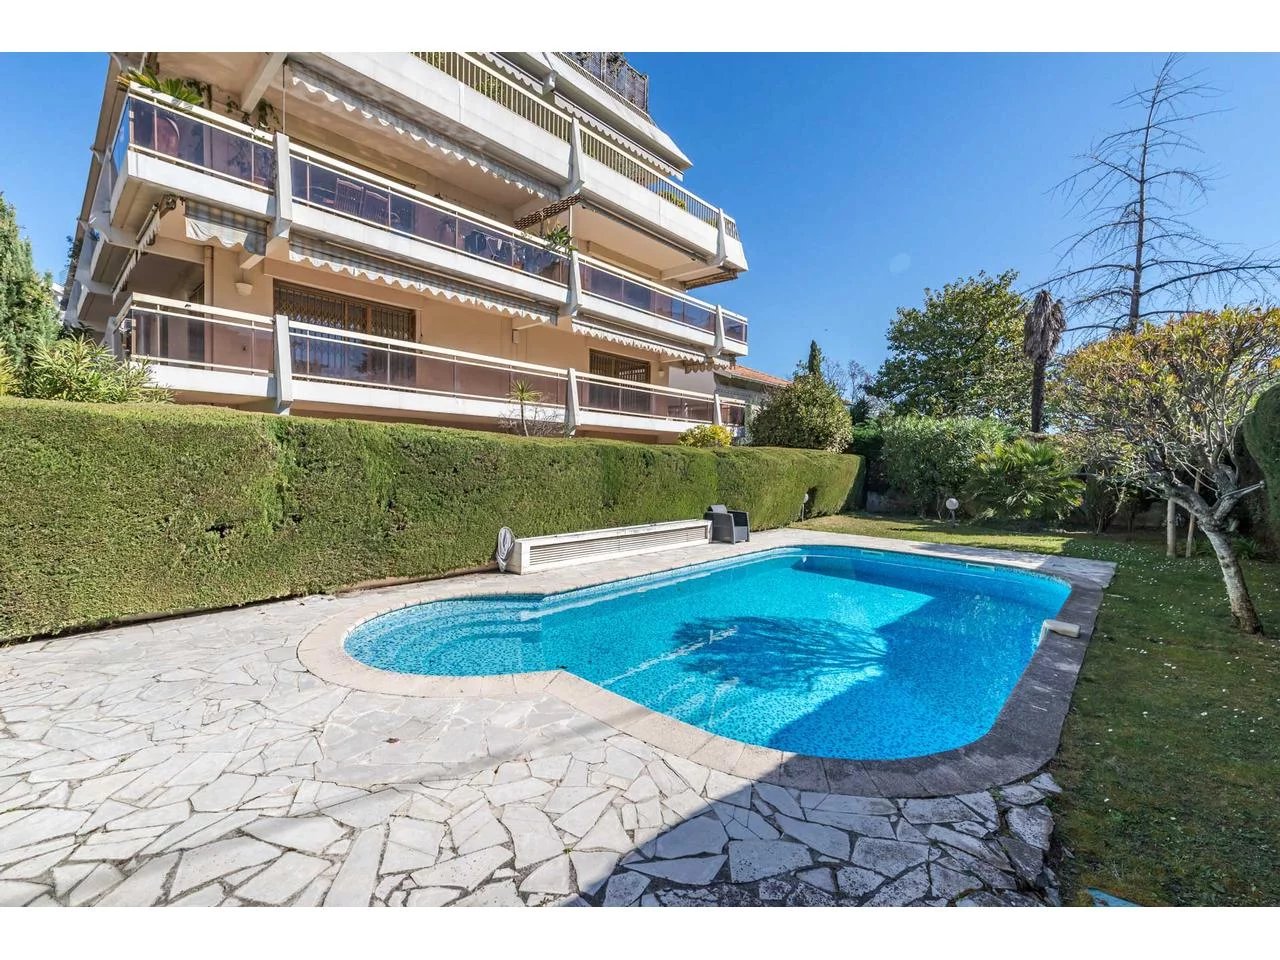 Nice Cimiez 3 pièces 80m² rénové résidence avec piscine